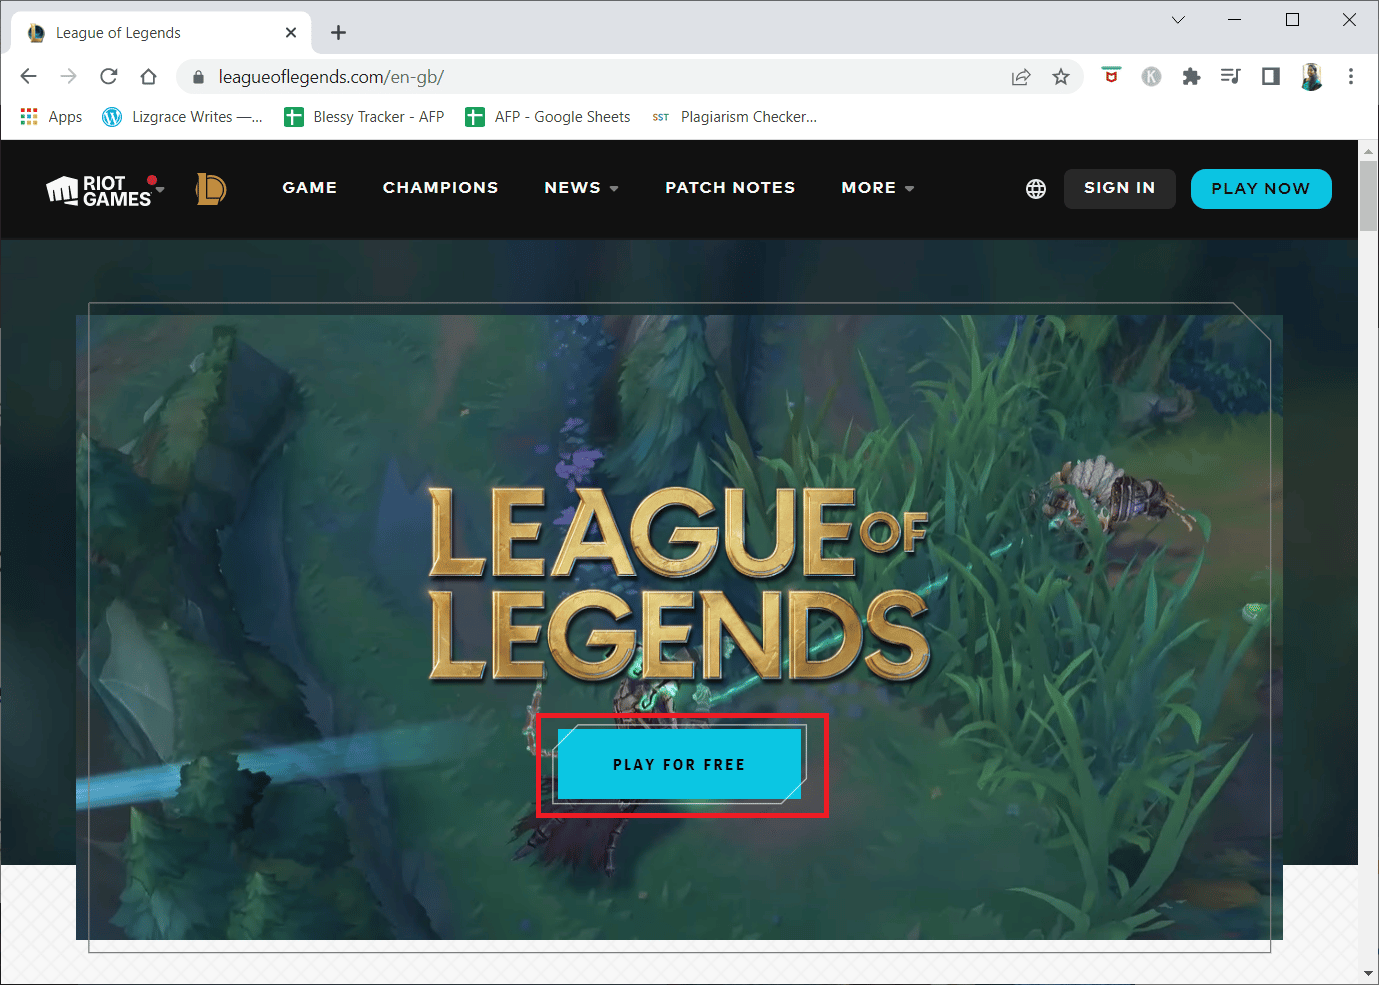 vaya a la página de descarga del sitio web oficial de League of Legends y haga clic en la opción JUGAR GRATIS